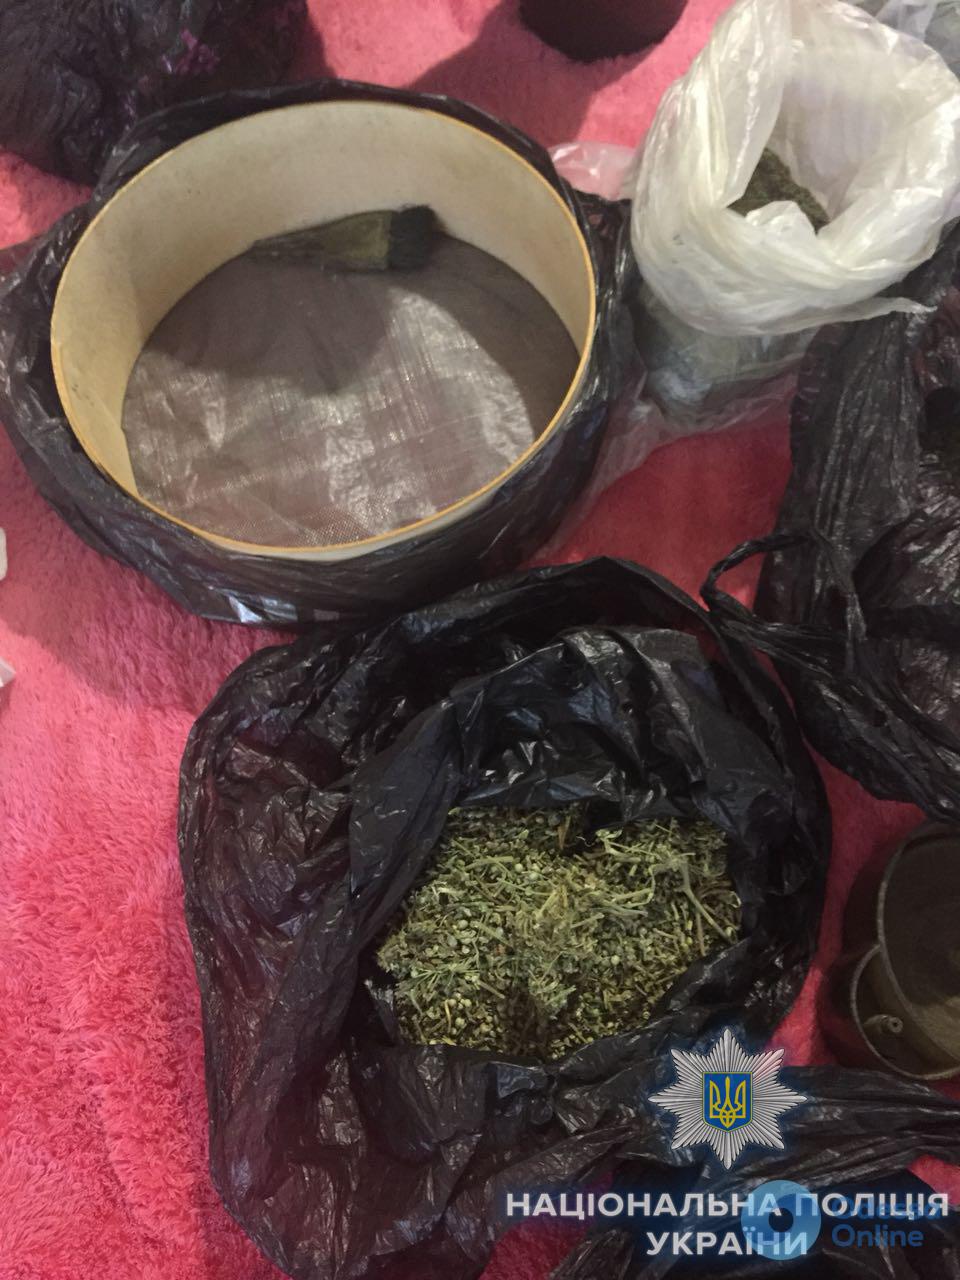 Полиция обнаружила у одессита около 1,5 килограмма марихуаны